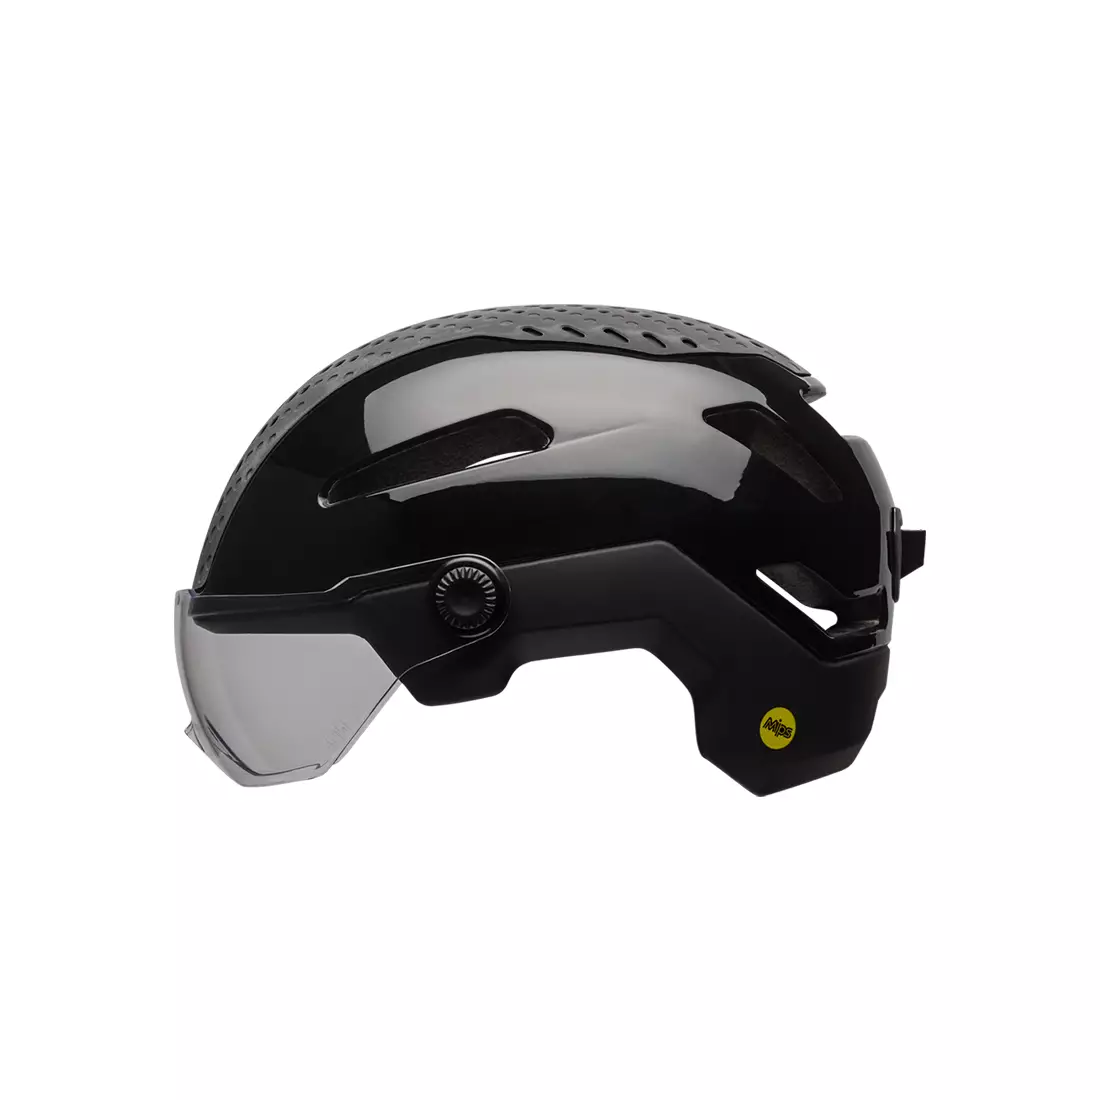 BELL ANNEX SHIELD INTEGRATED MIPS městská cyklistická helma, černá